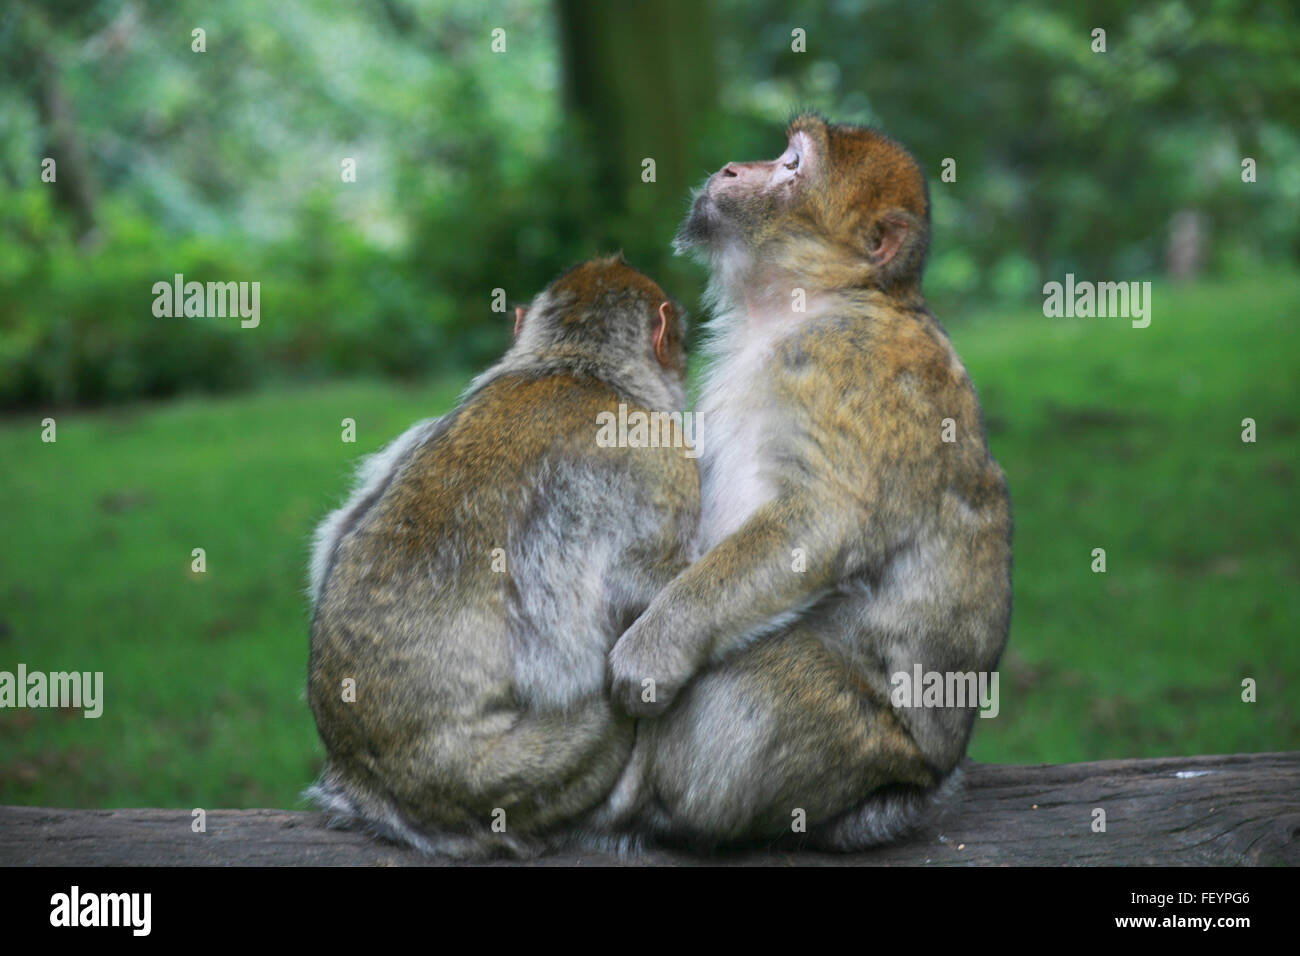 Safari, monkey baby, couleur, des singes à l'état sauvage, la mère et le bébé singe singe singe, caresser, hug, hug, sauvage, animal, créature Banque D'Images